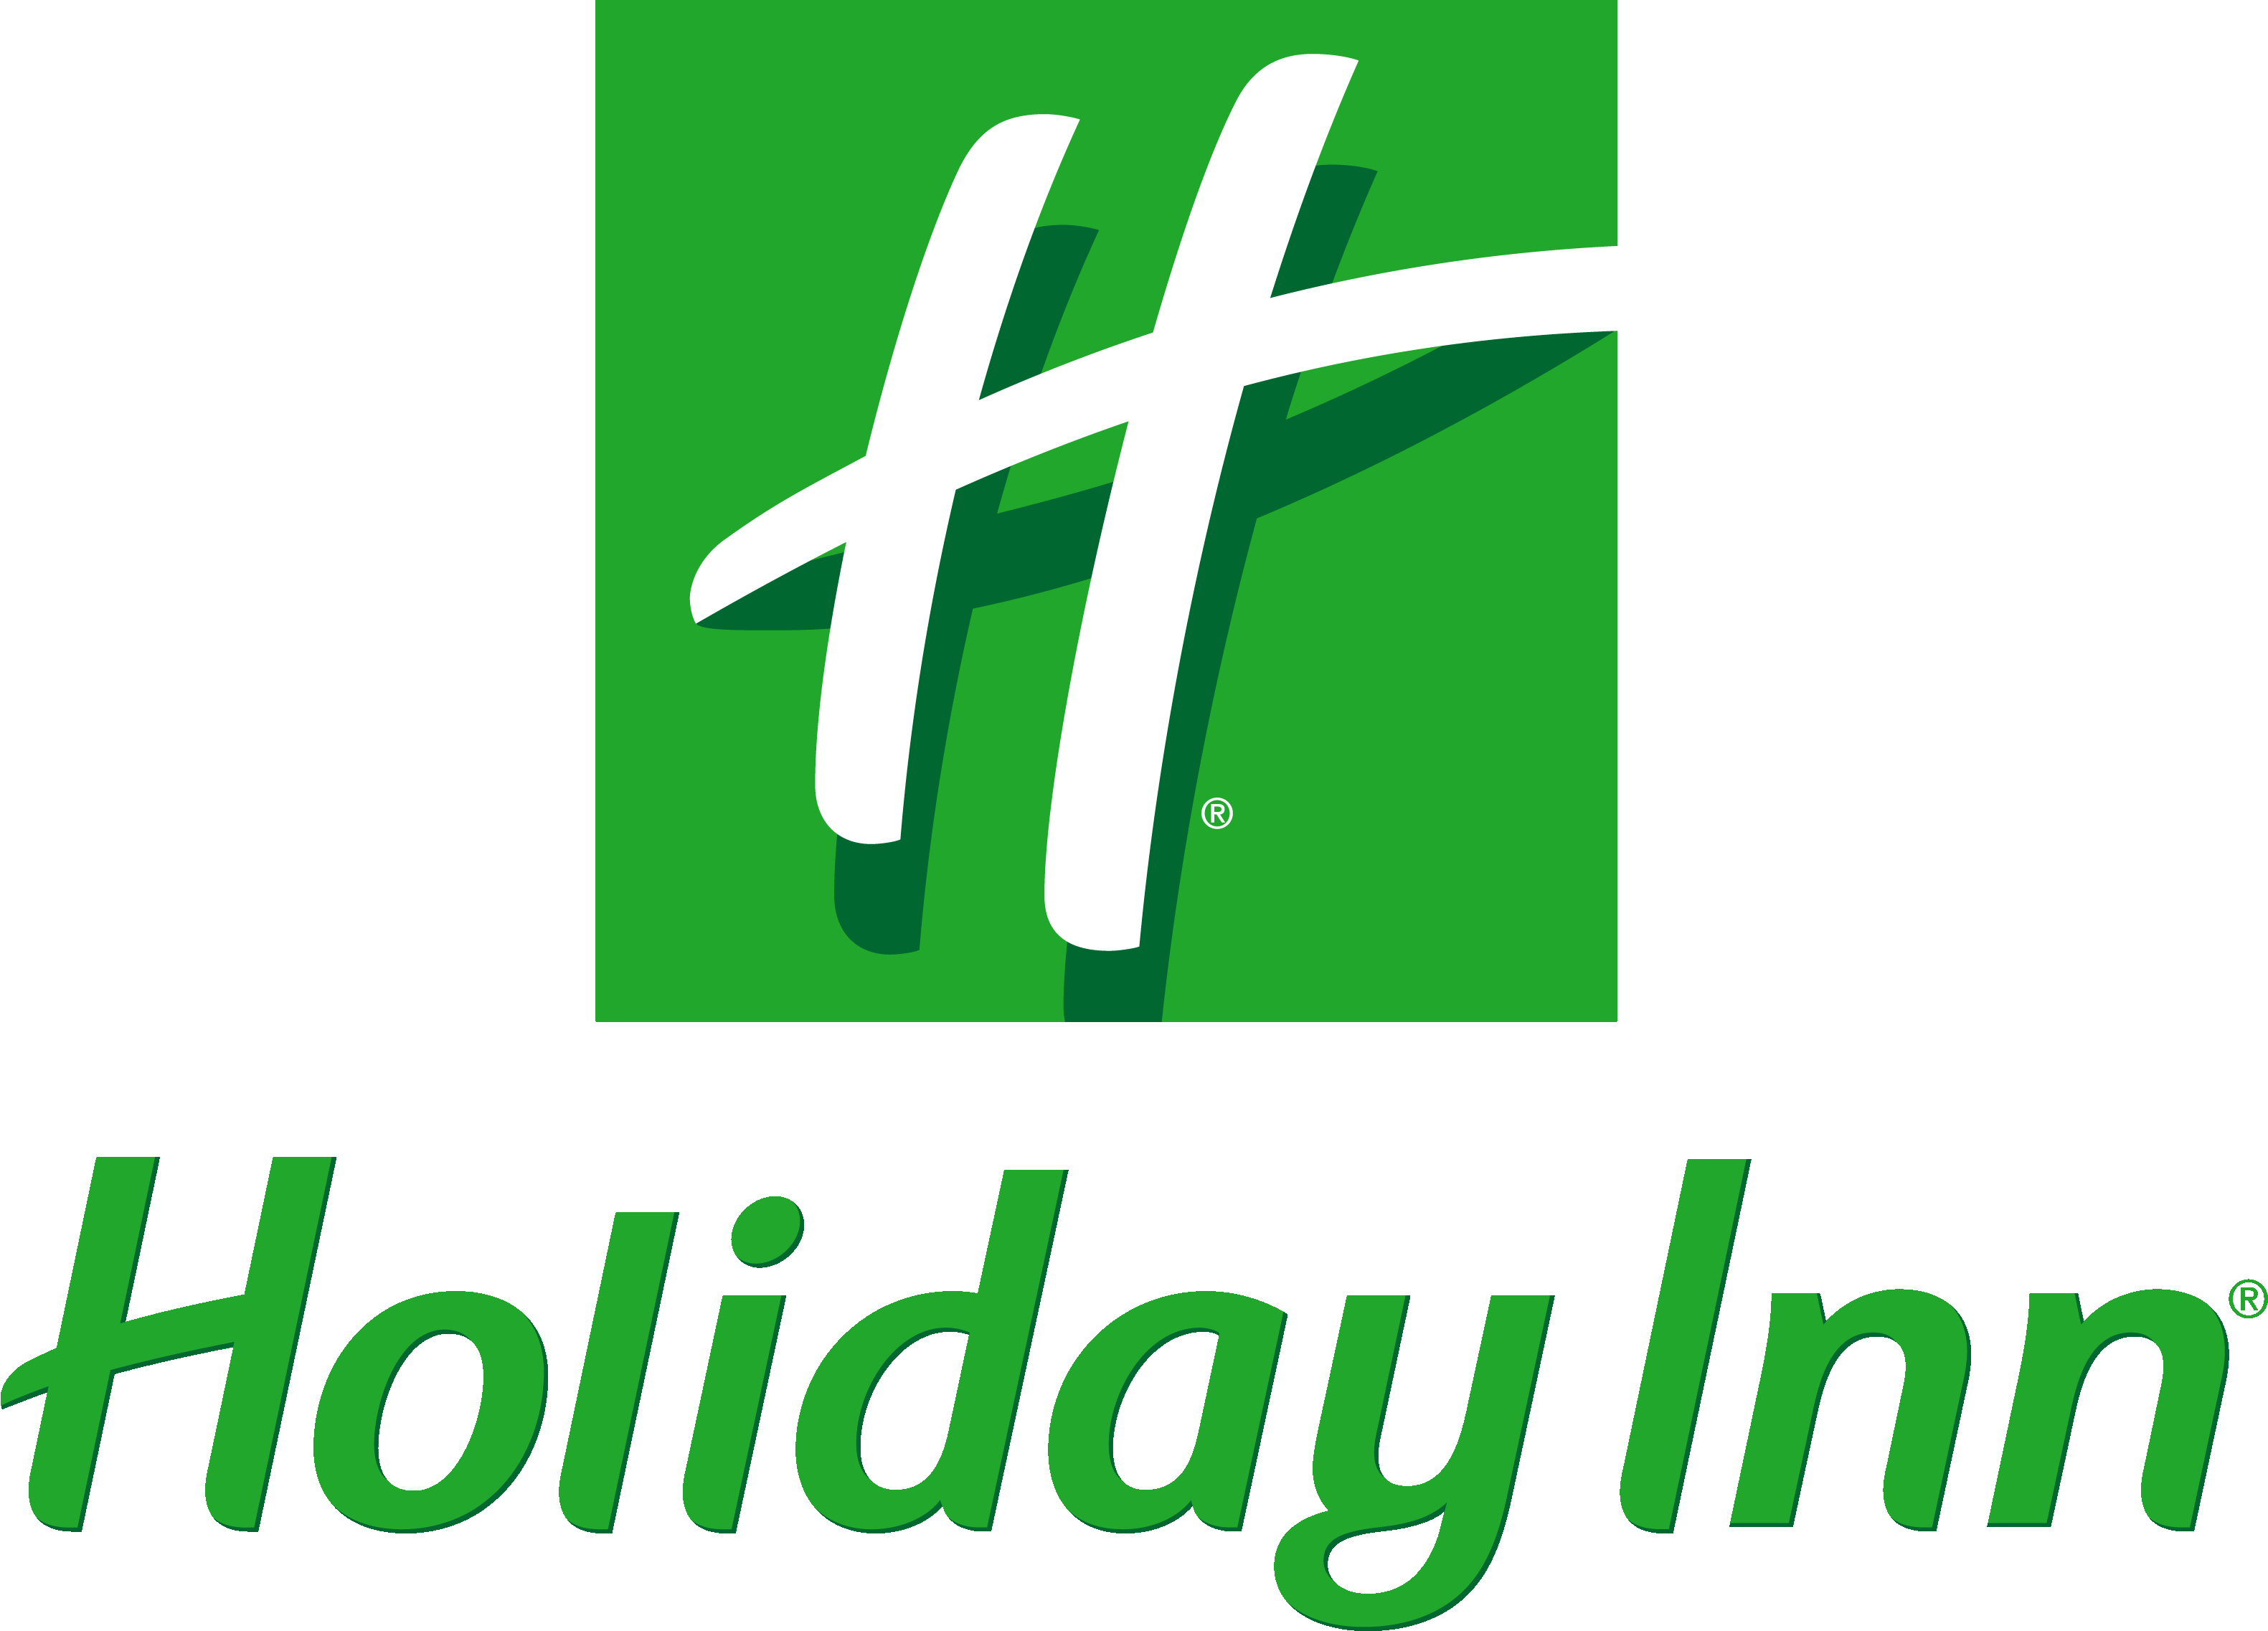 логотип Холидей Инн